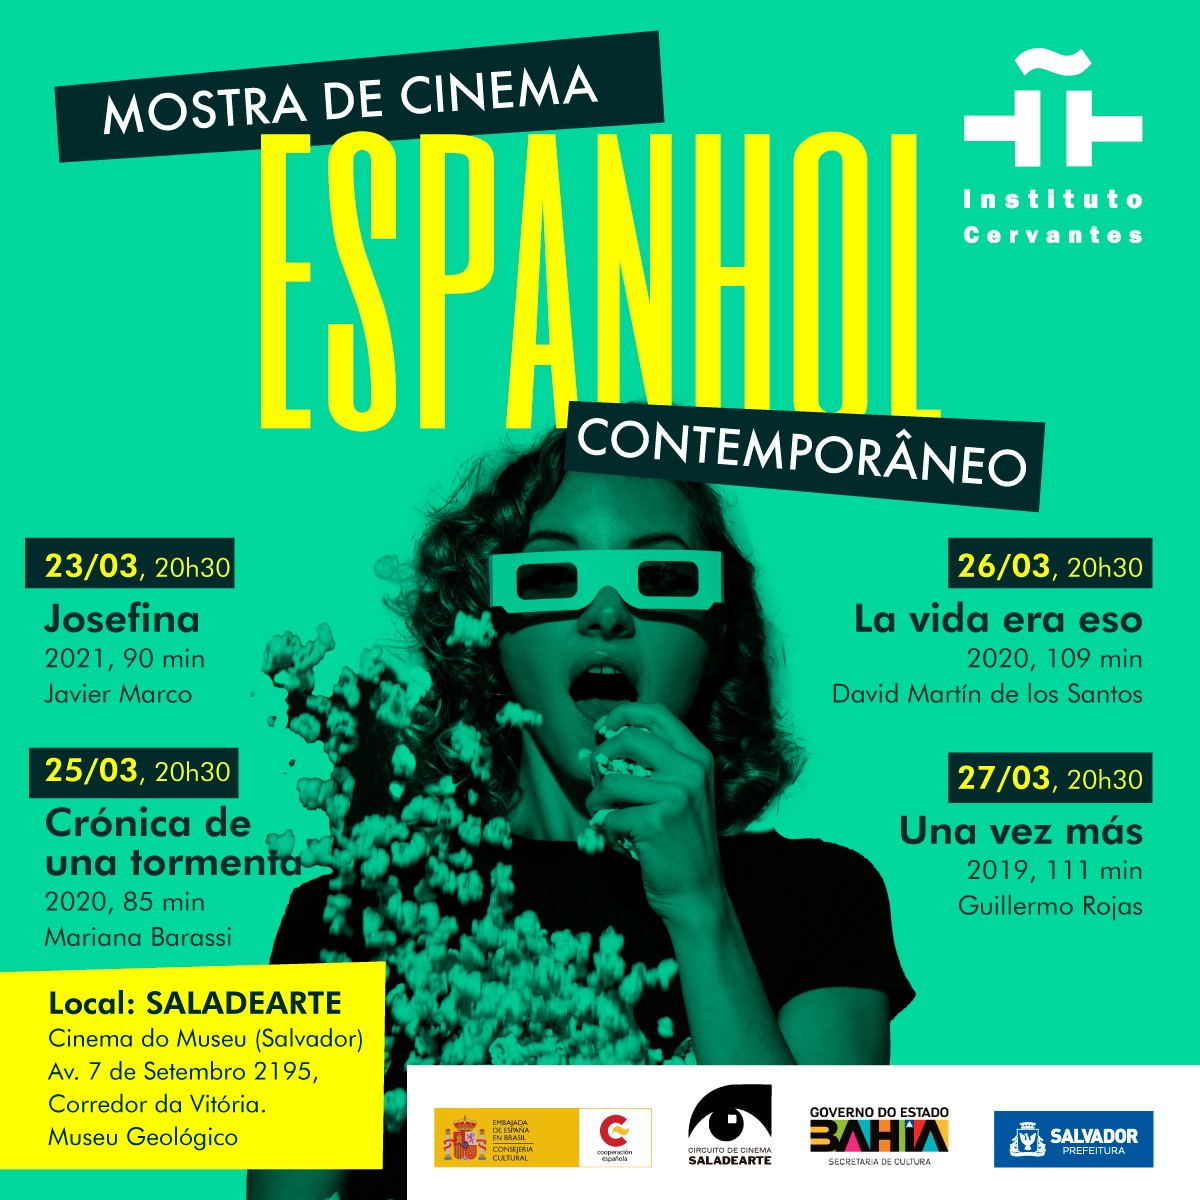 Muestra de joven cine español contemporáneo